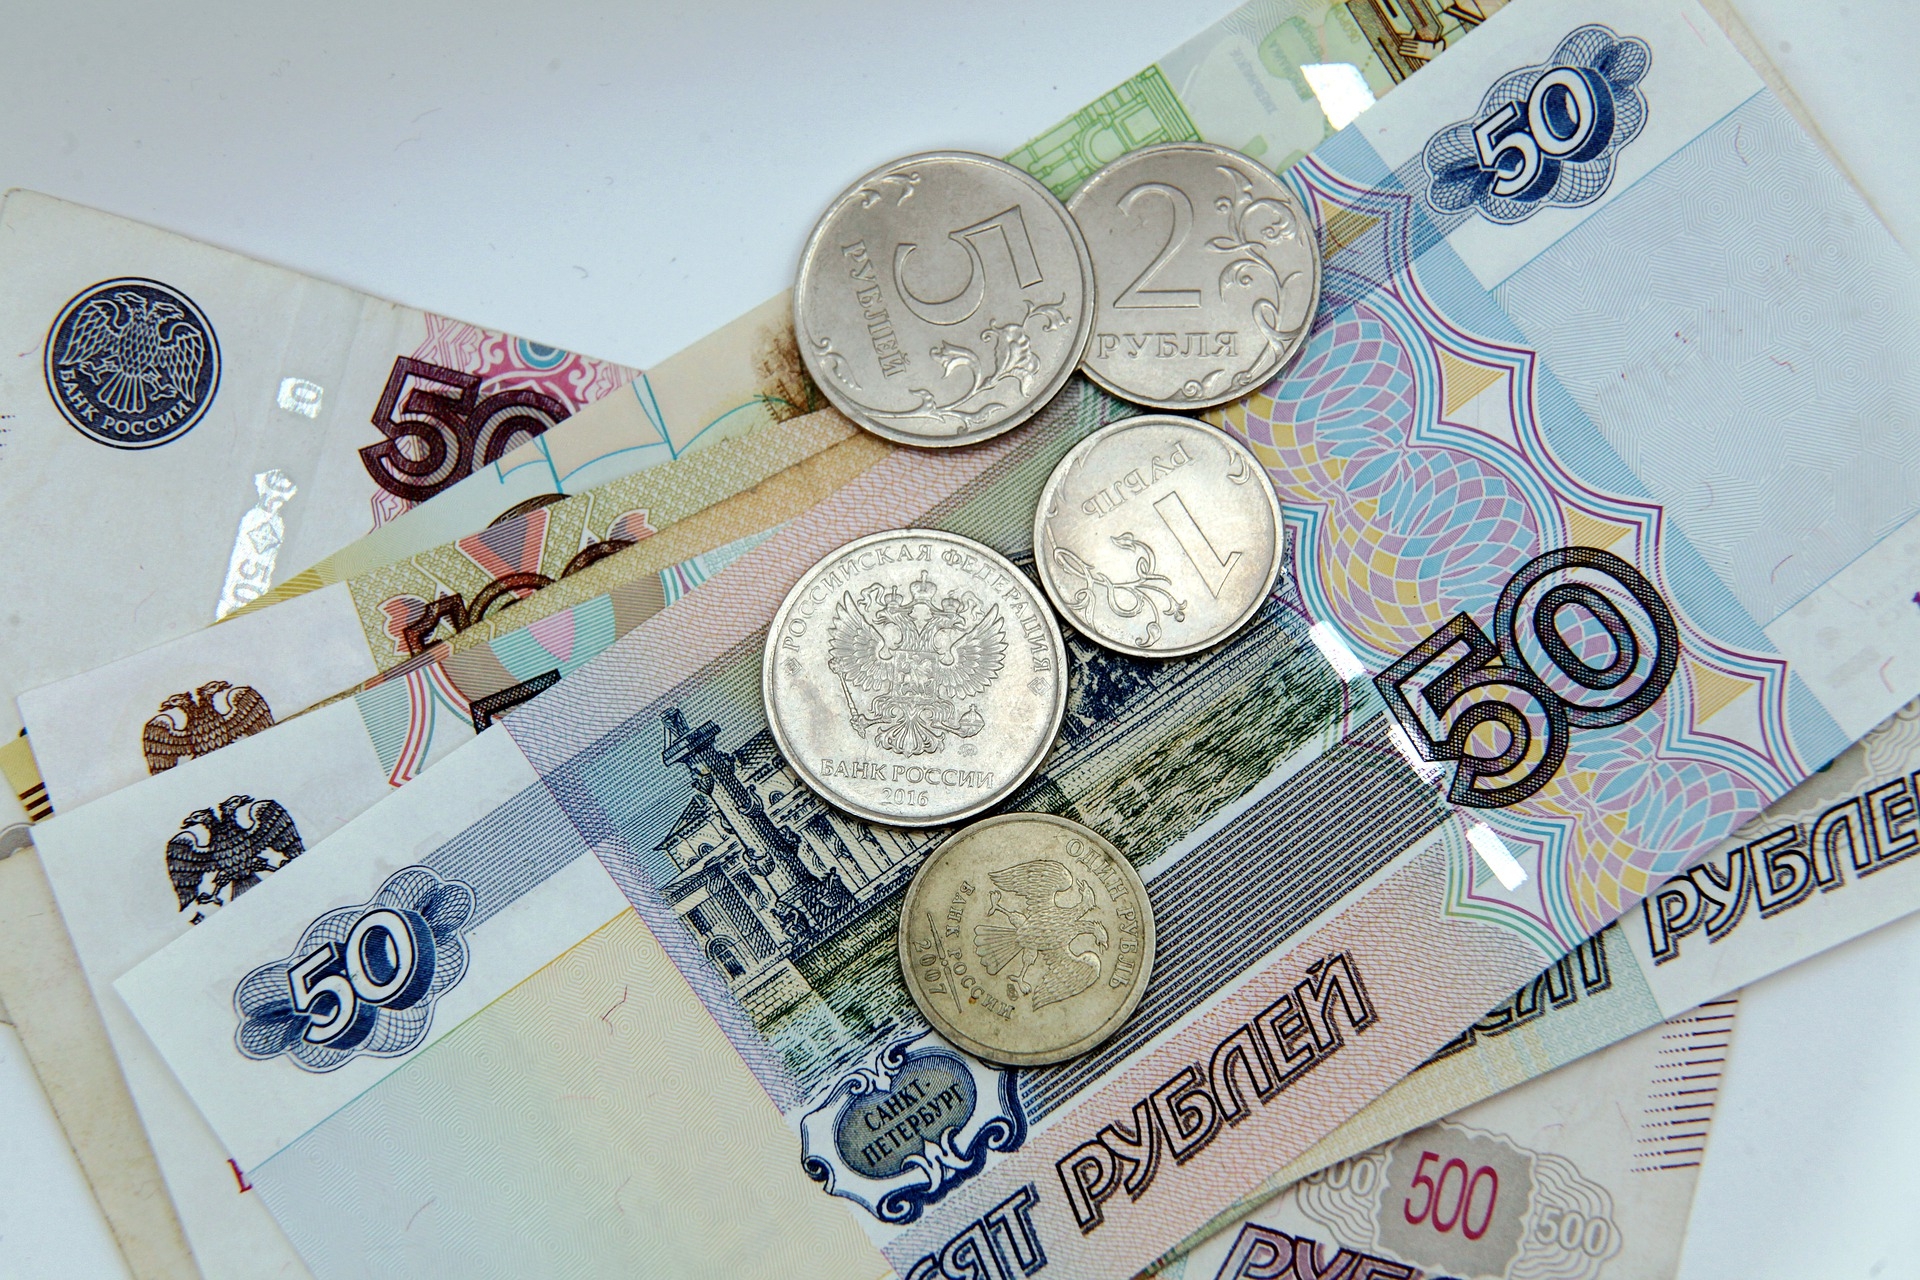 Псаки заявила, что санкции поставят Россию перед выбором между дефолтом и истощением валютных резервов